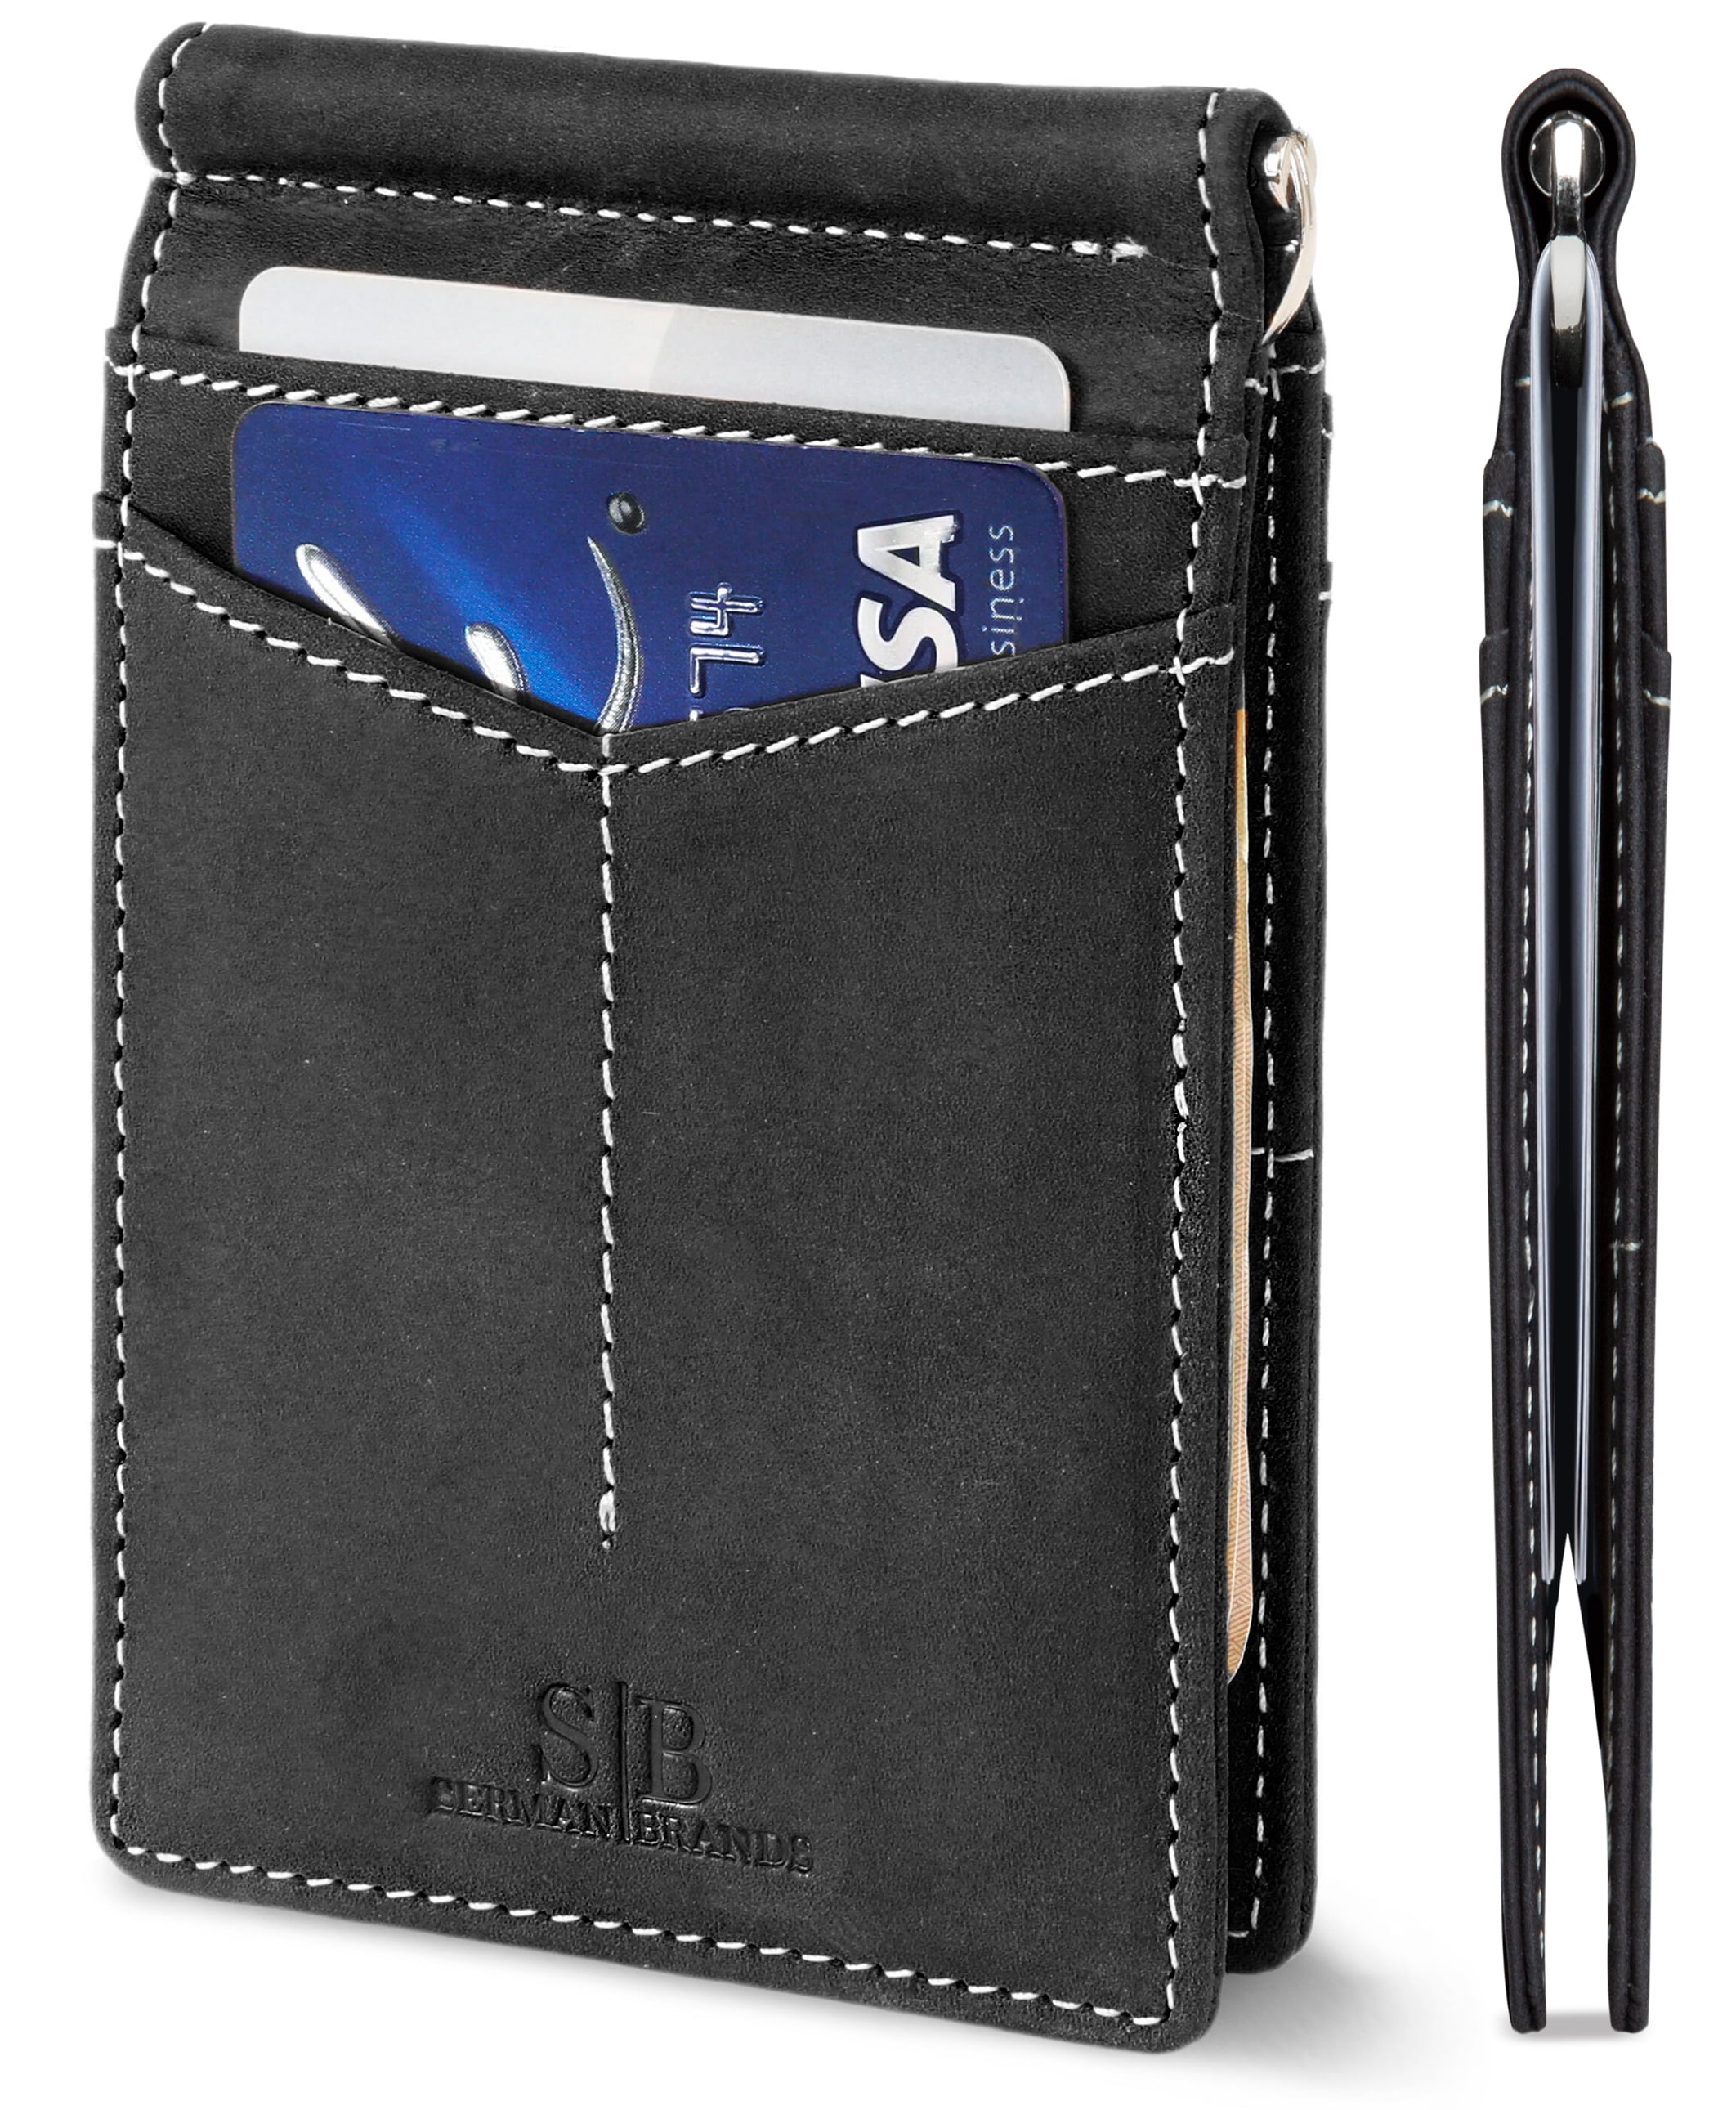 Grain leather wallet Leather wallet Small wallet men Mens wallet Bags & Purses Wallets & Money Clips Money Clips Mini wallet Small leather wallet blue Leather bifold Women wallet 